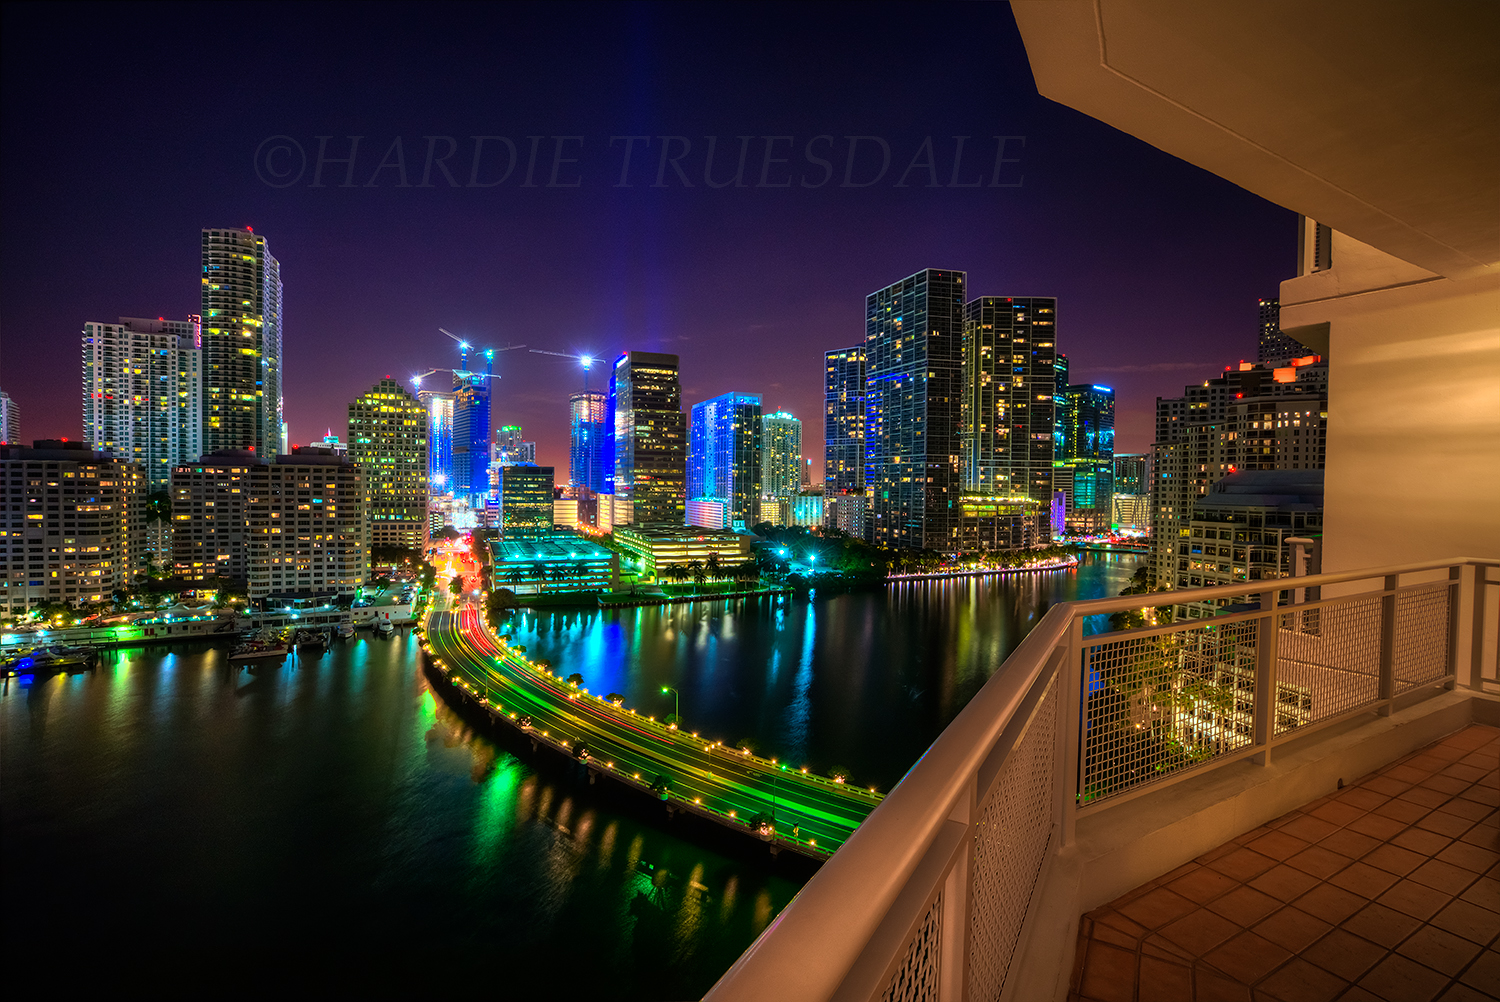 FL#4 "Miami Heat, Night Views from Brickell Key"